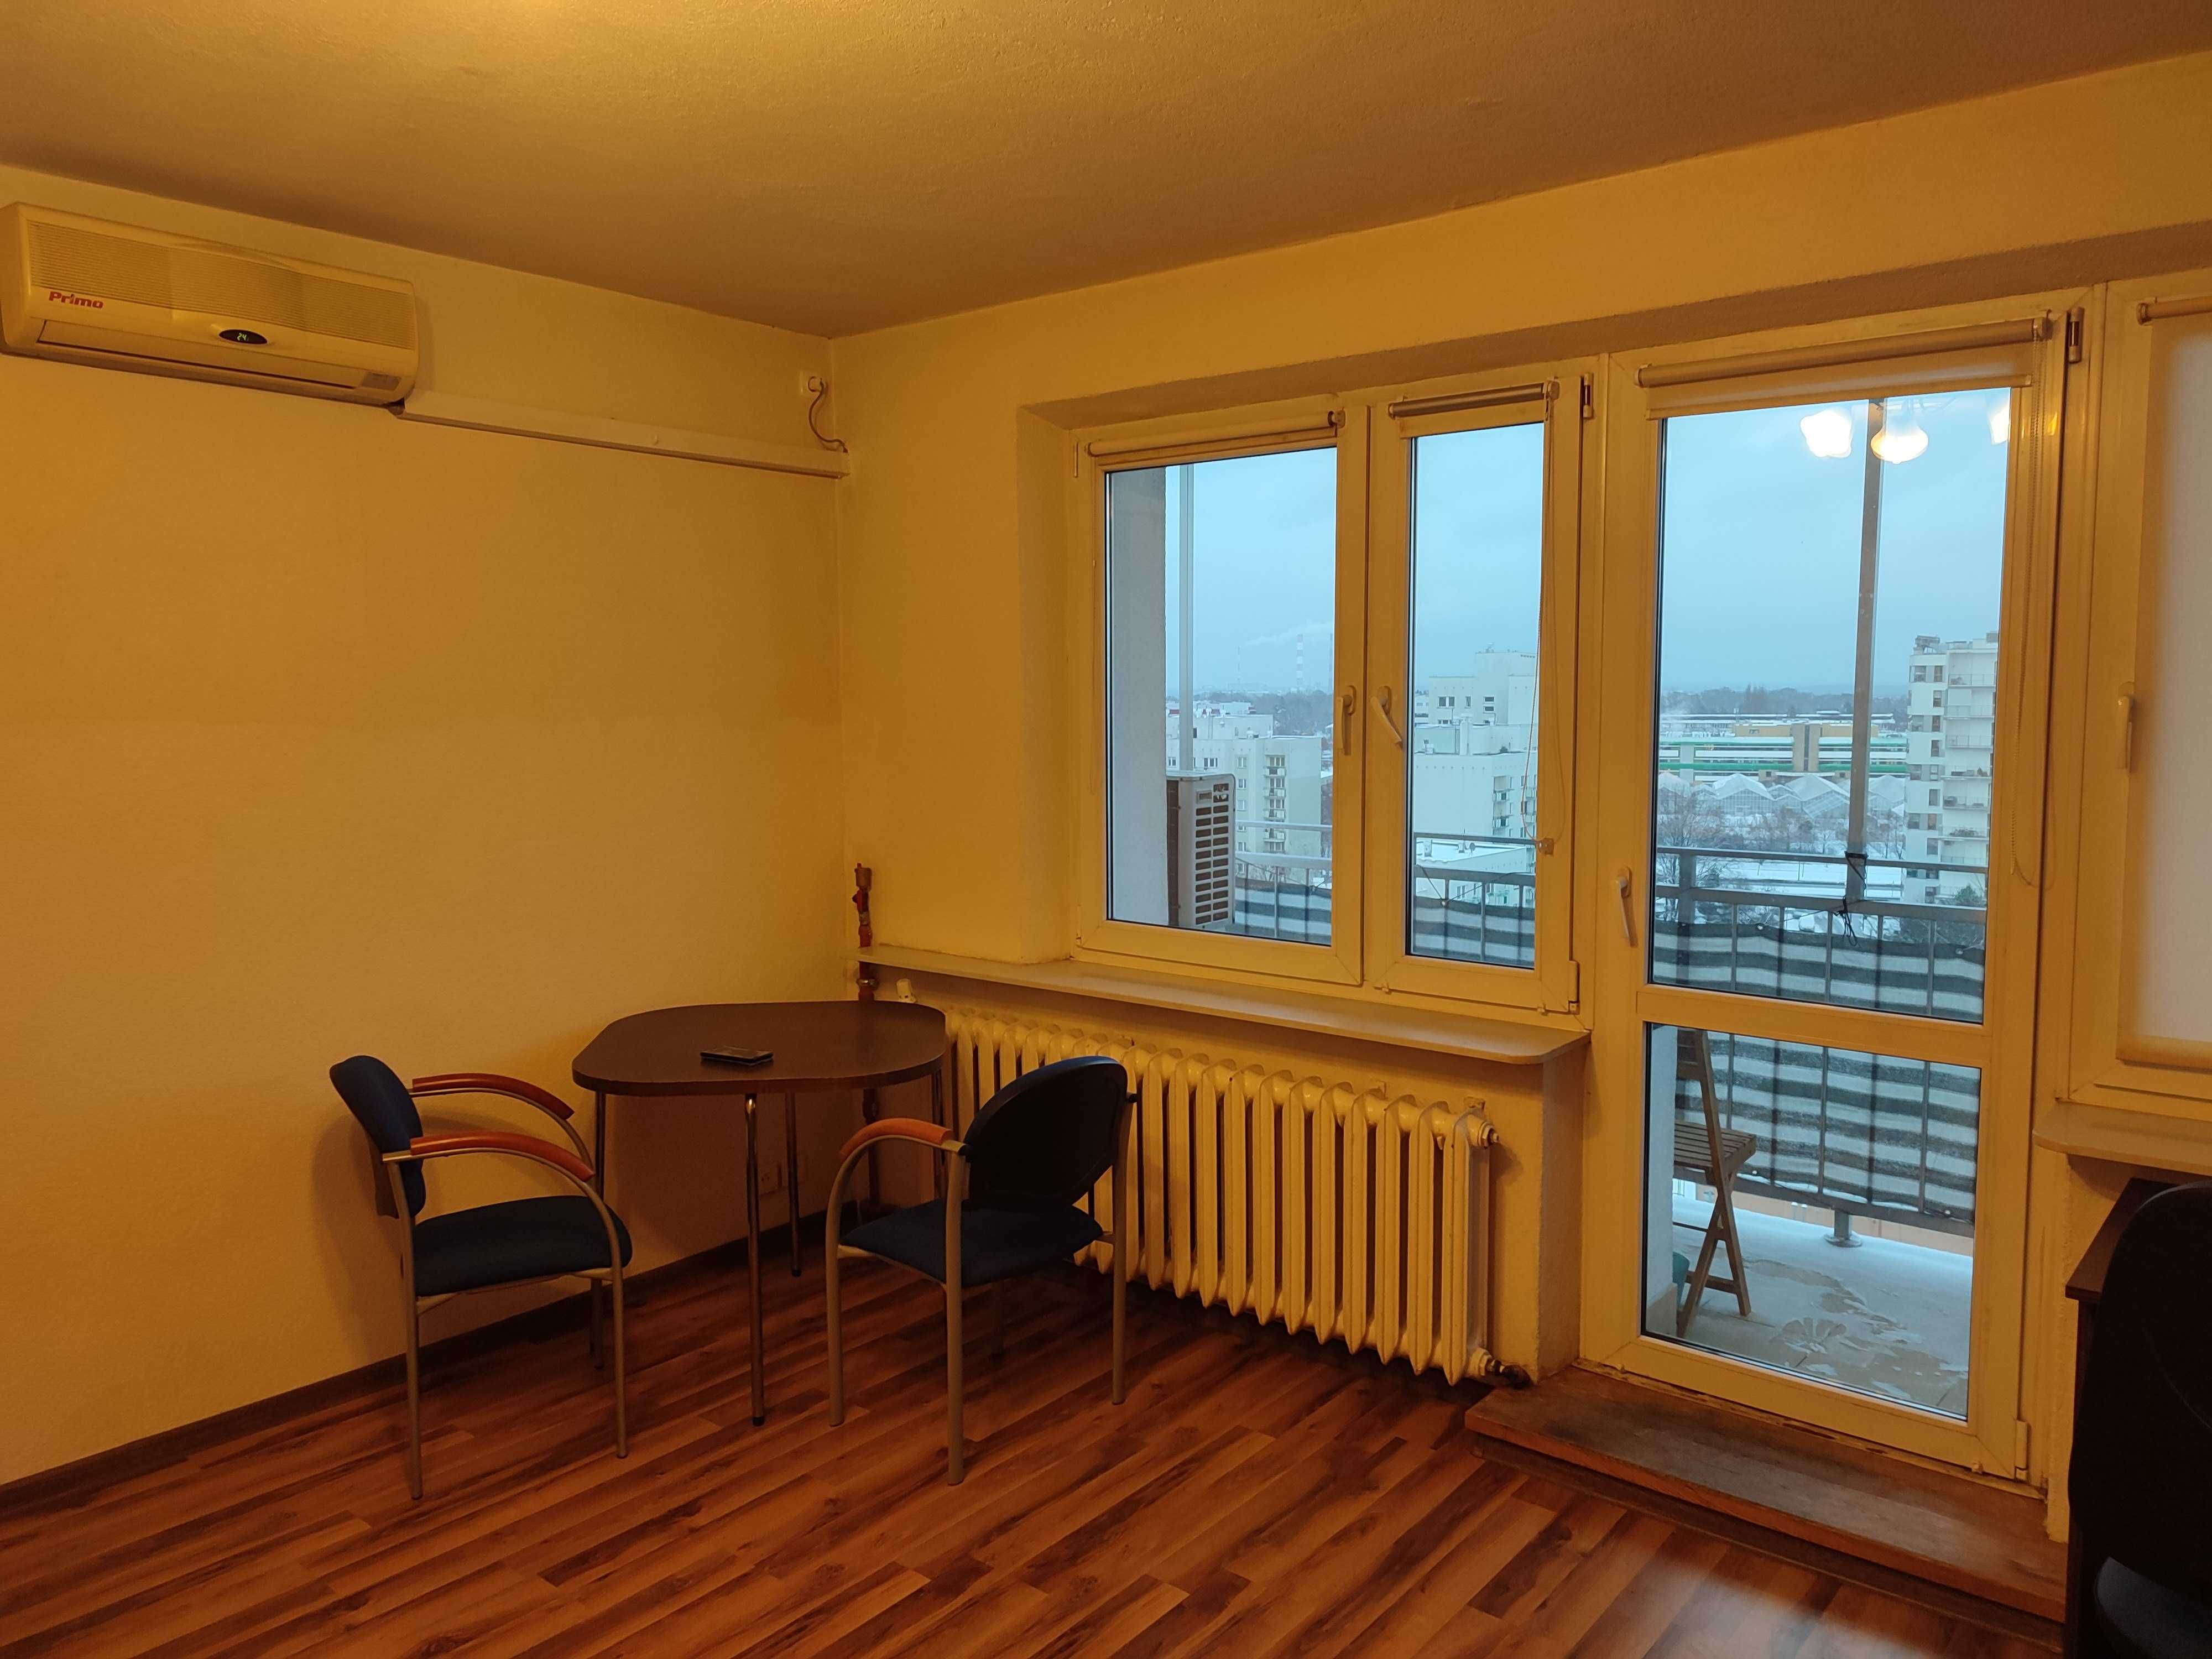 Pokój z balkonem dla 1 lub 2 osób, koło metra Stokłosy, klimatyzacja.